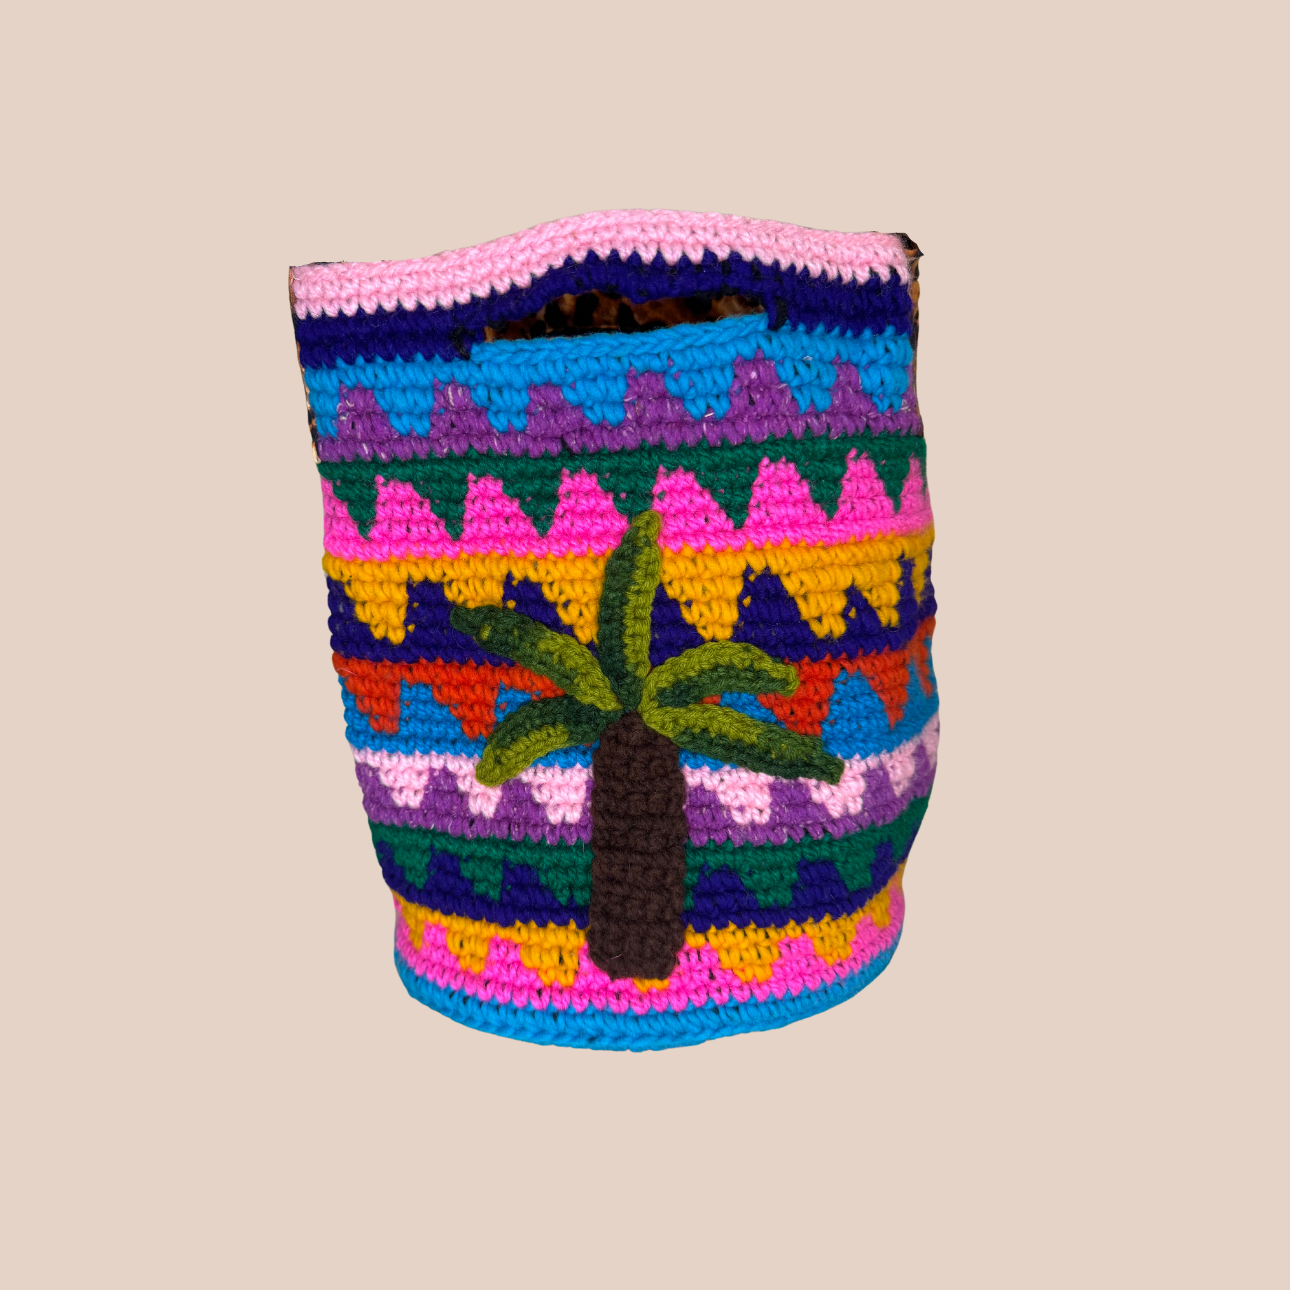  Image du sac motif palmier, doublure et anses réglable imprimé leopard de Maison Badigo, sac en laine crocheté multicolore unique et tendance